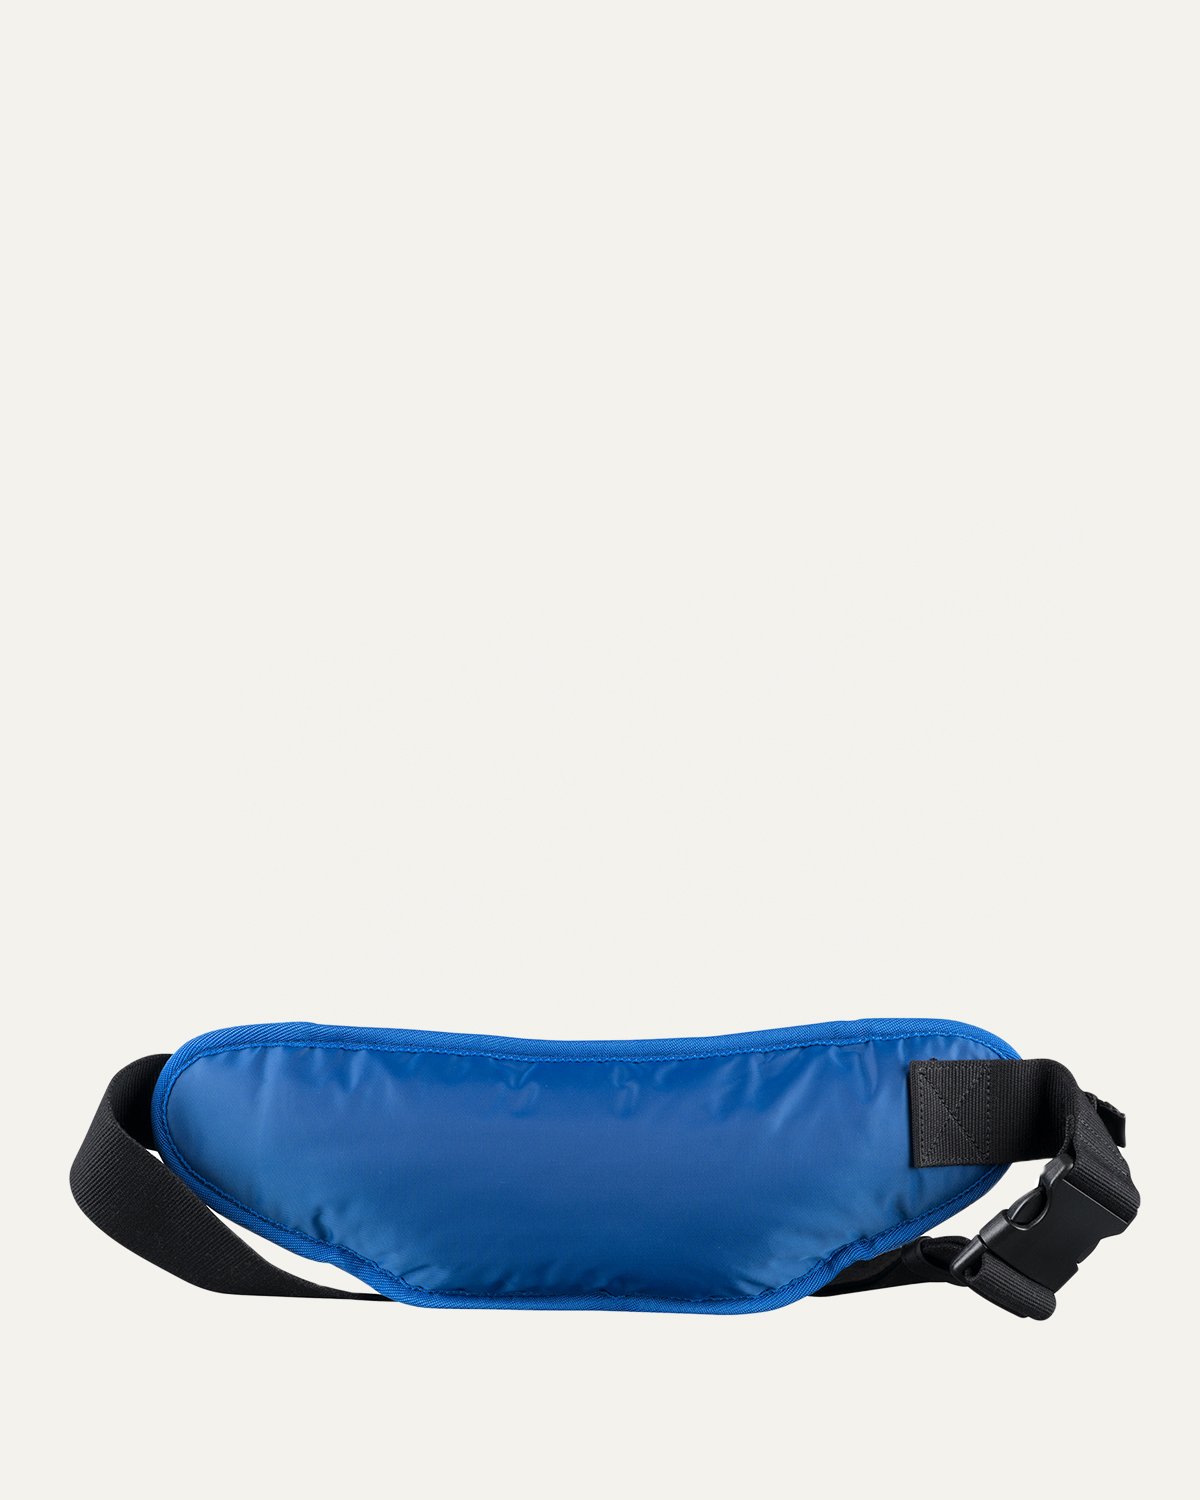 A.P.C. x Carhartt WIP - Shawn Hip Bag Indigo - Accessories - Blue - Image 3